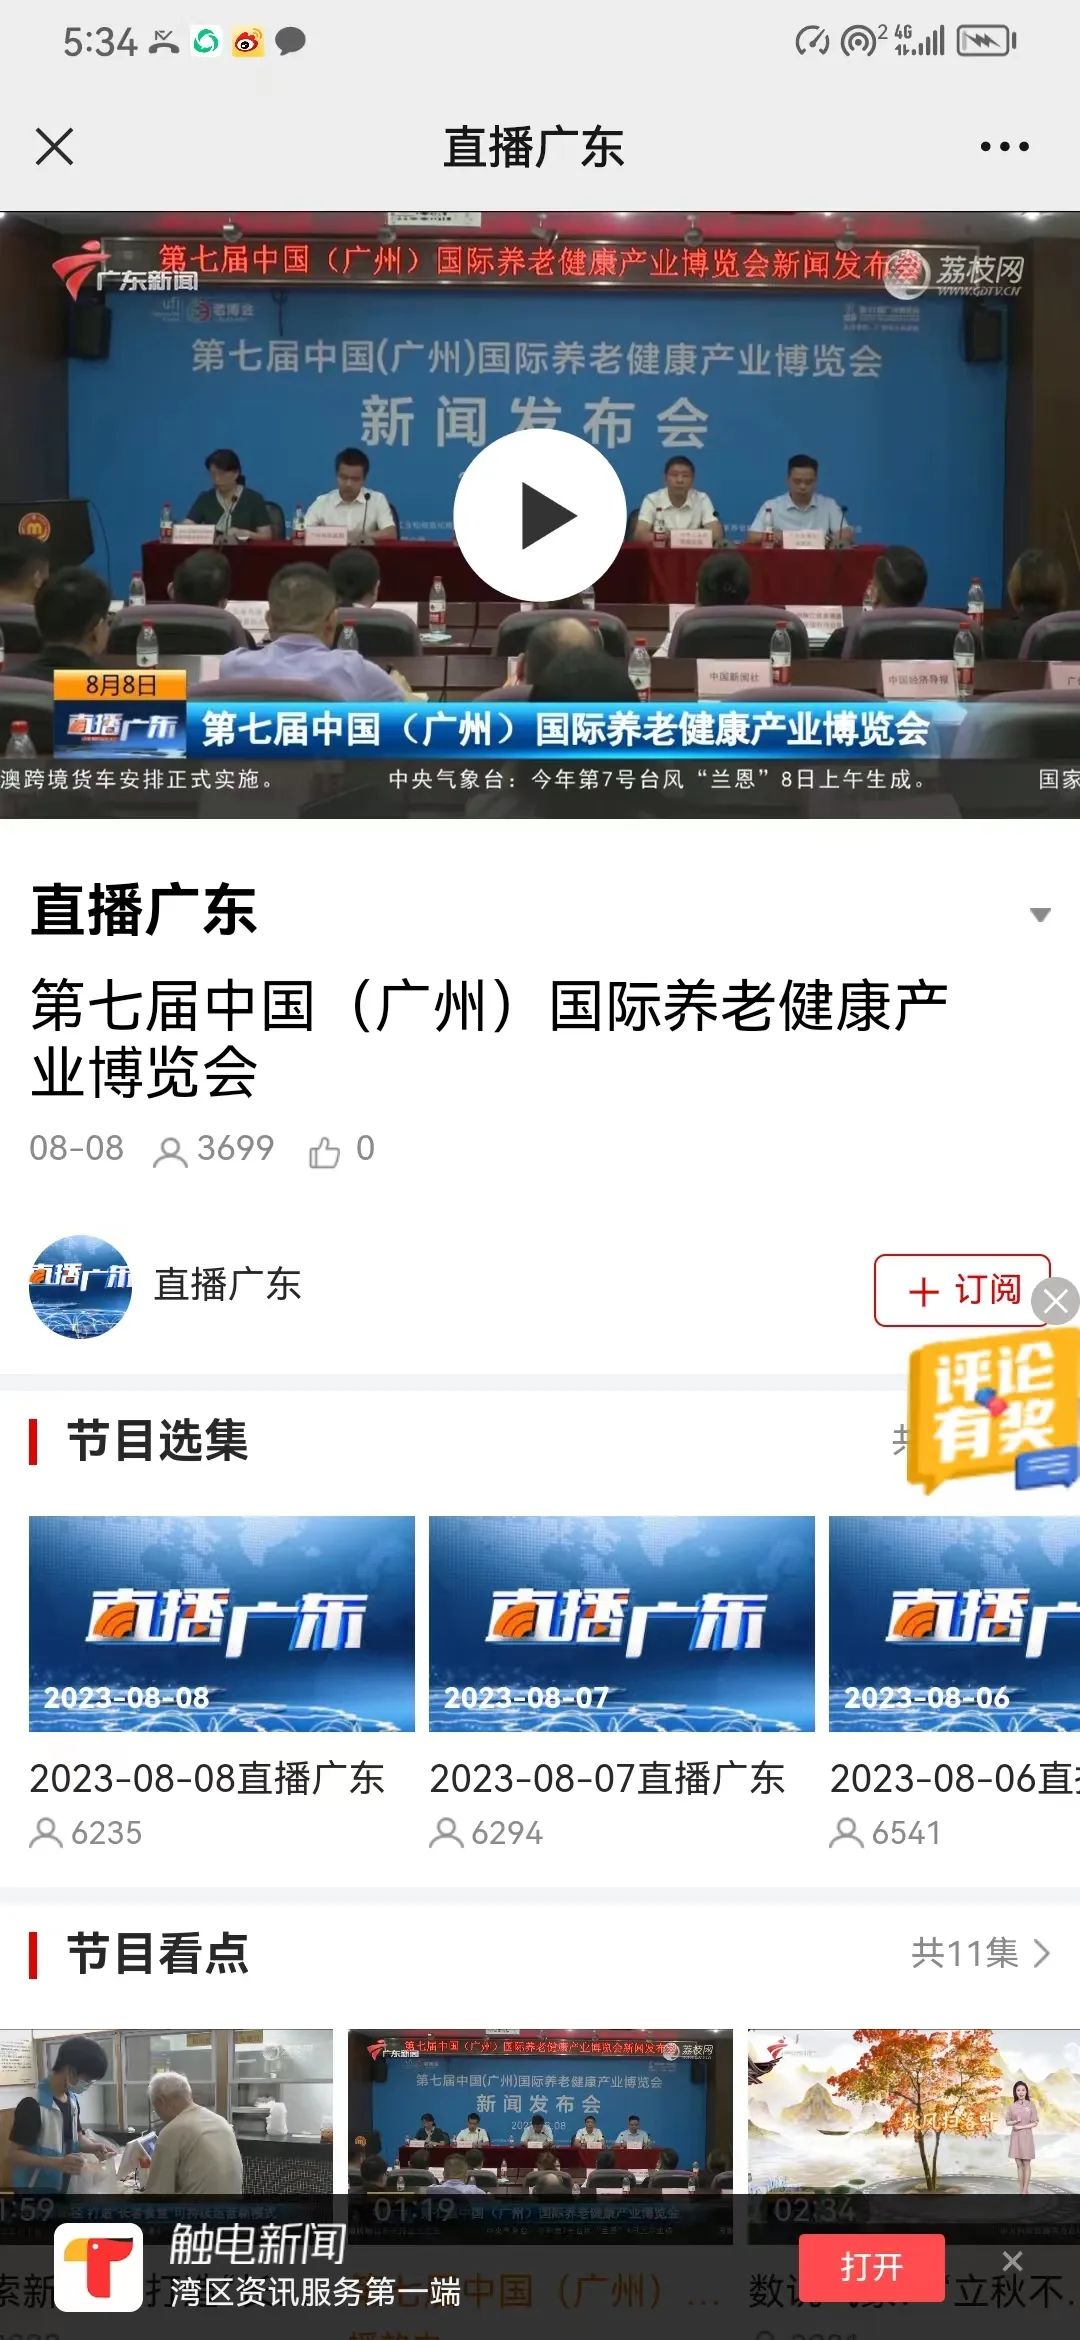 实力刷屏！中国日报等多家媒体关注报道第七届广州老博会19.jpg